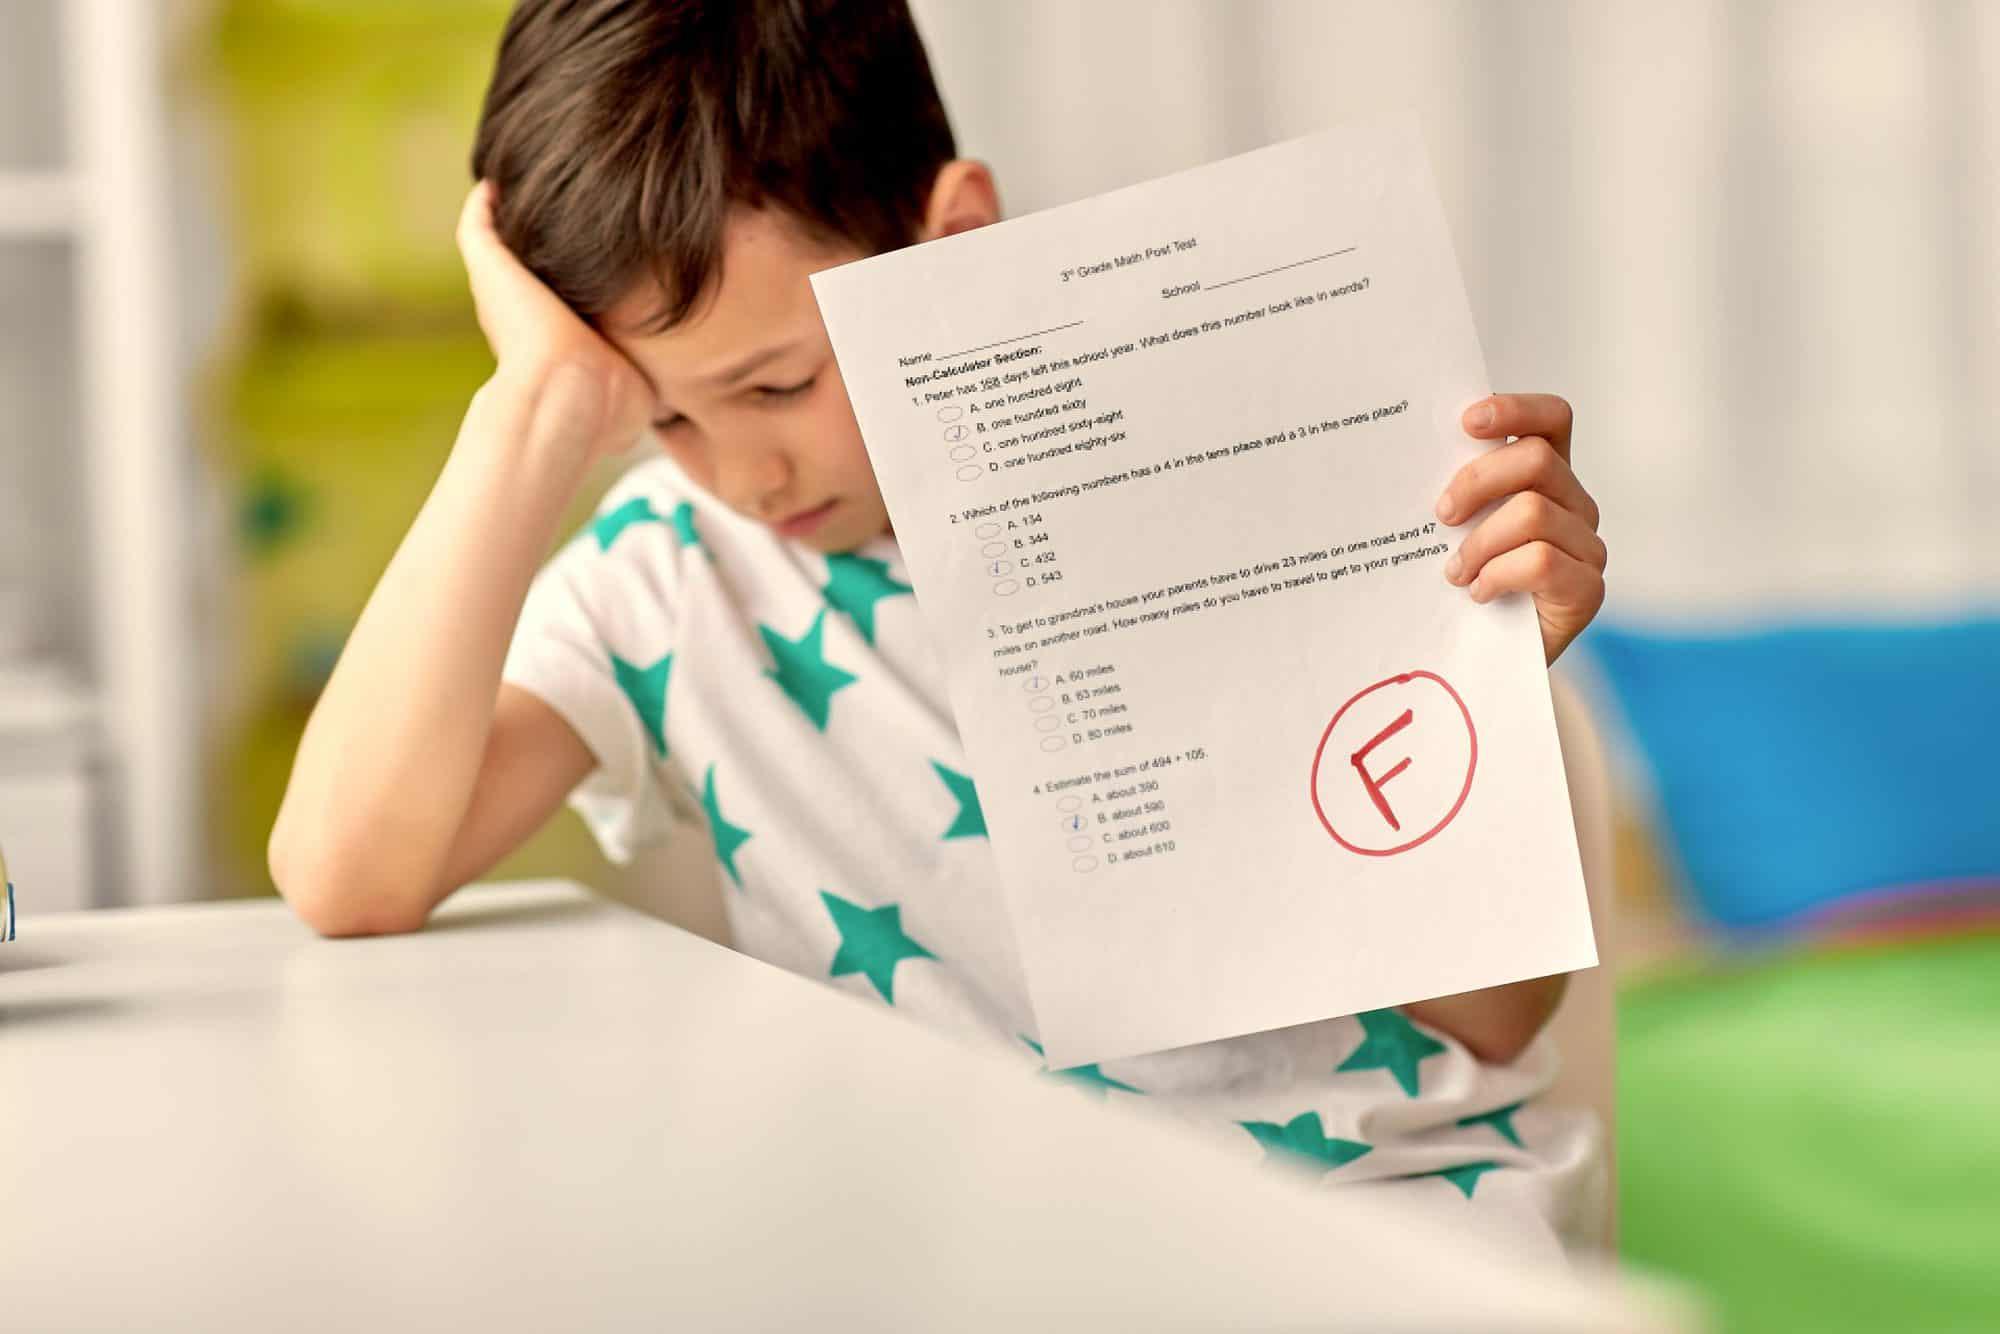 Mi hijo se esfuerza pero se frustra por sus notas, ¿cómo ayudarle?